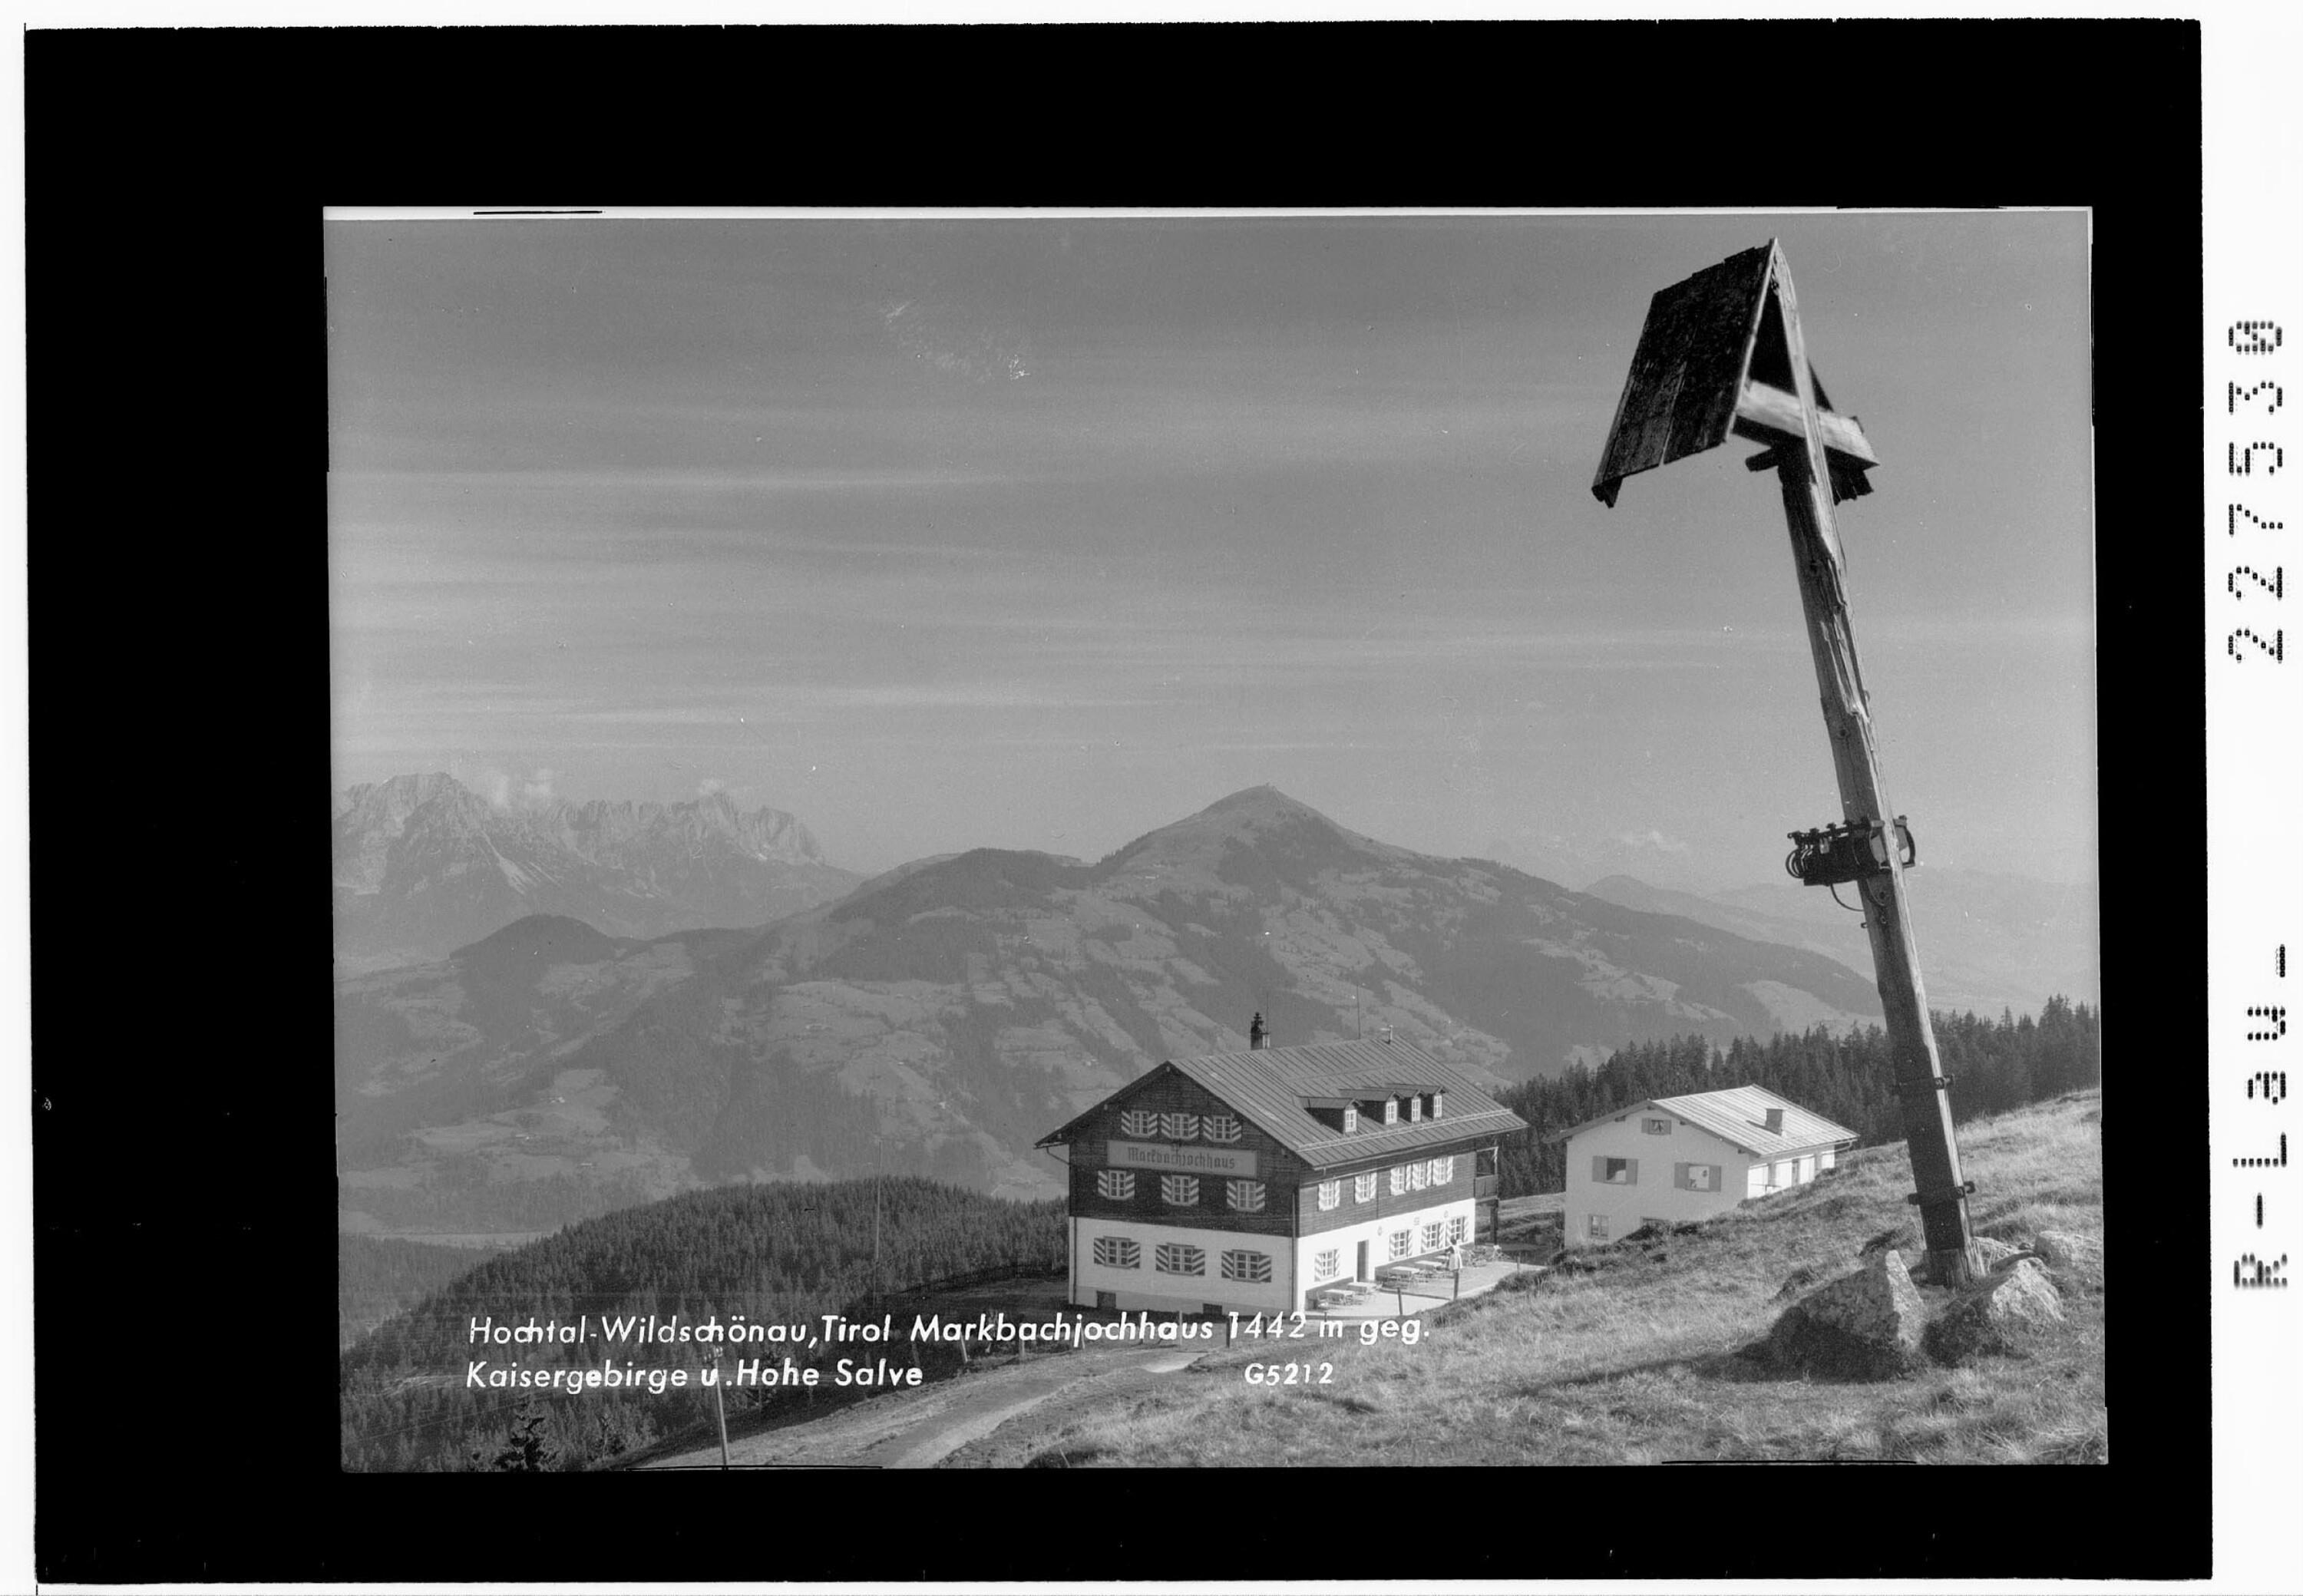 Hochtal Wildschönau / Tirol / Markbachjochhaus 1442 m gegen Kaisergebirge und Hohe Salve></div>


    <hr>
    <div class=